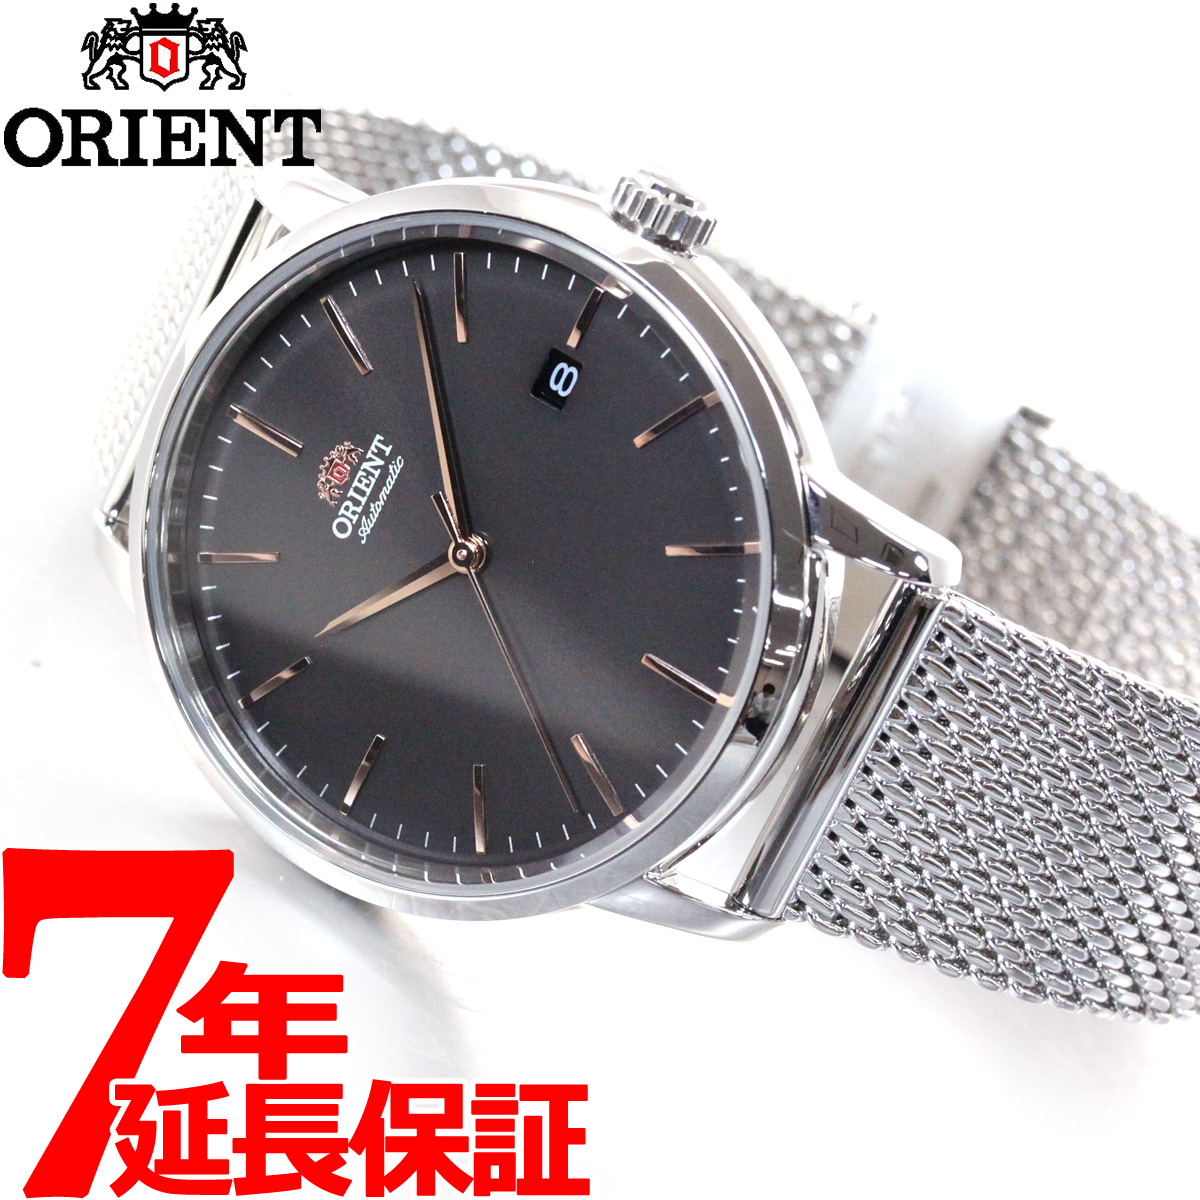 楽天市場 店内ポイント最大34 5倍 オリエント 腕時計 メンズ 自動巻き 機械式 Orient コンテンポラリー Contemporary Rn Ac0e05n Neelセレクトショップ